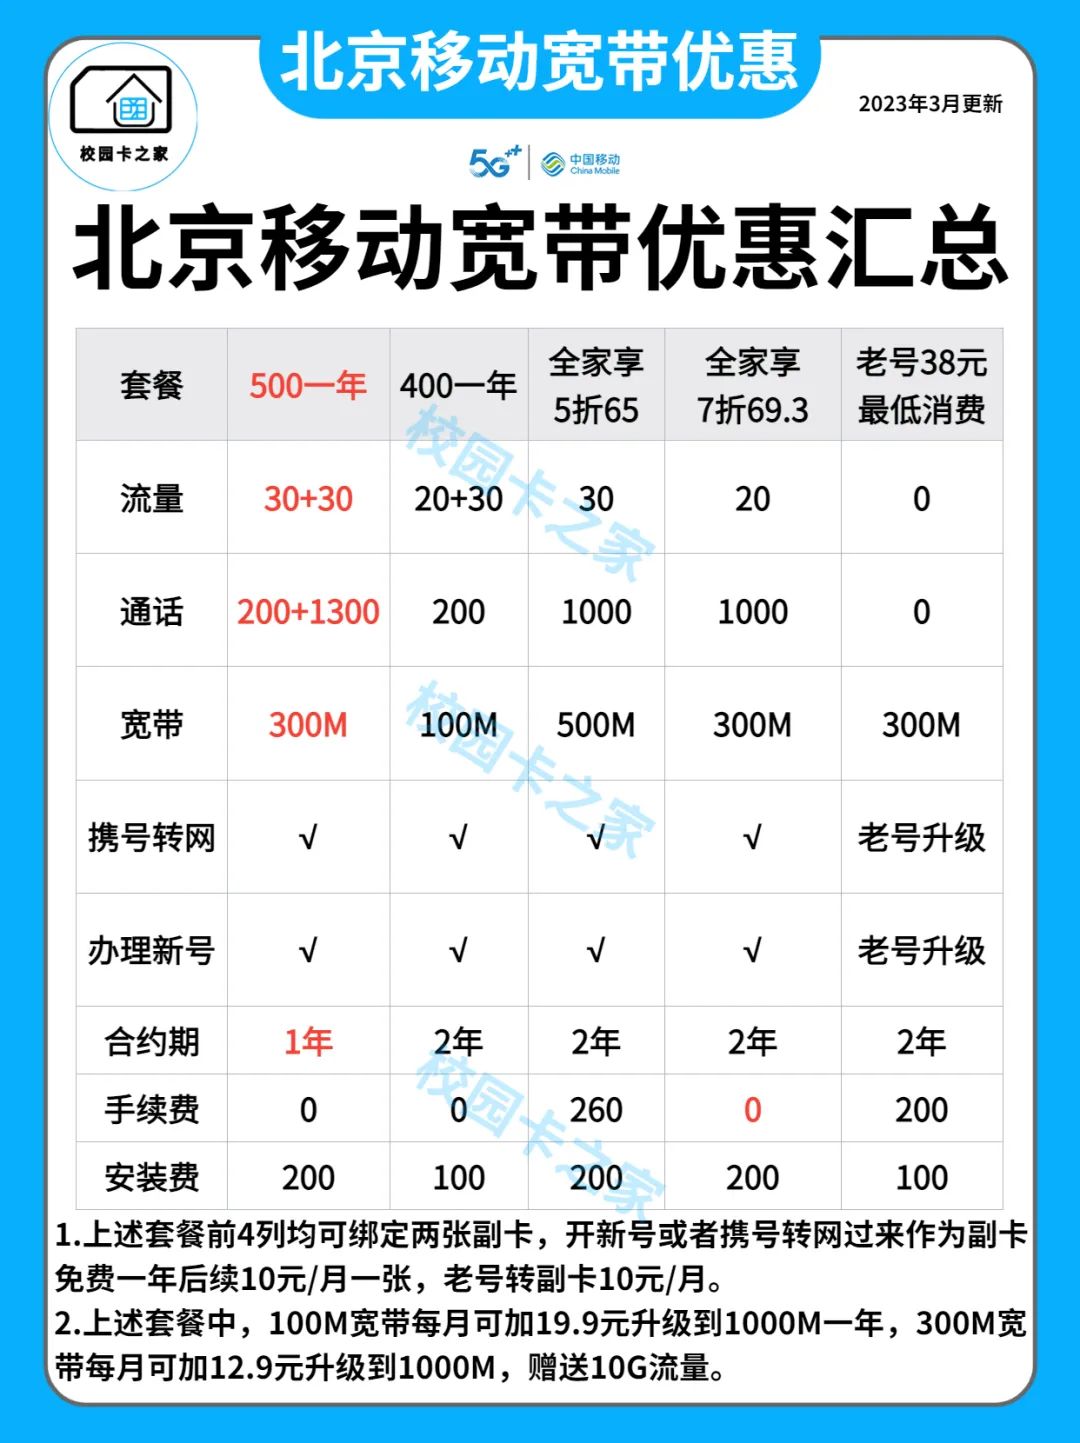 2023年北京移动联通宽带优惠套餐资费价格一览表插图3